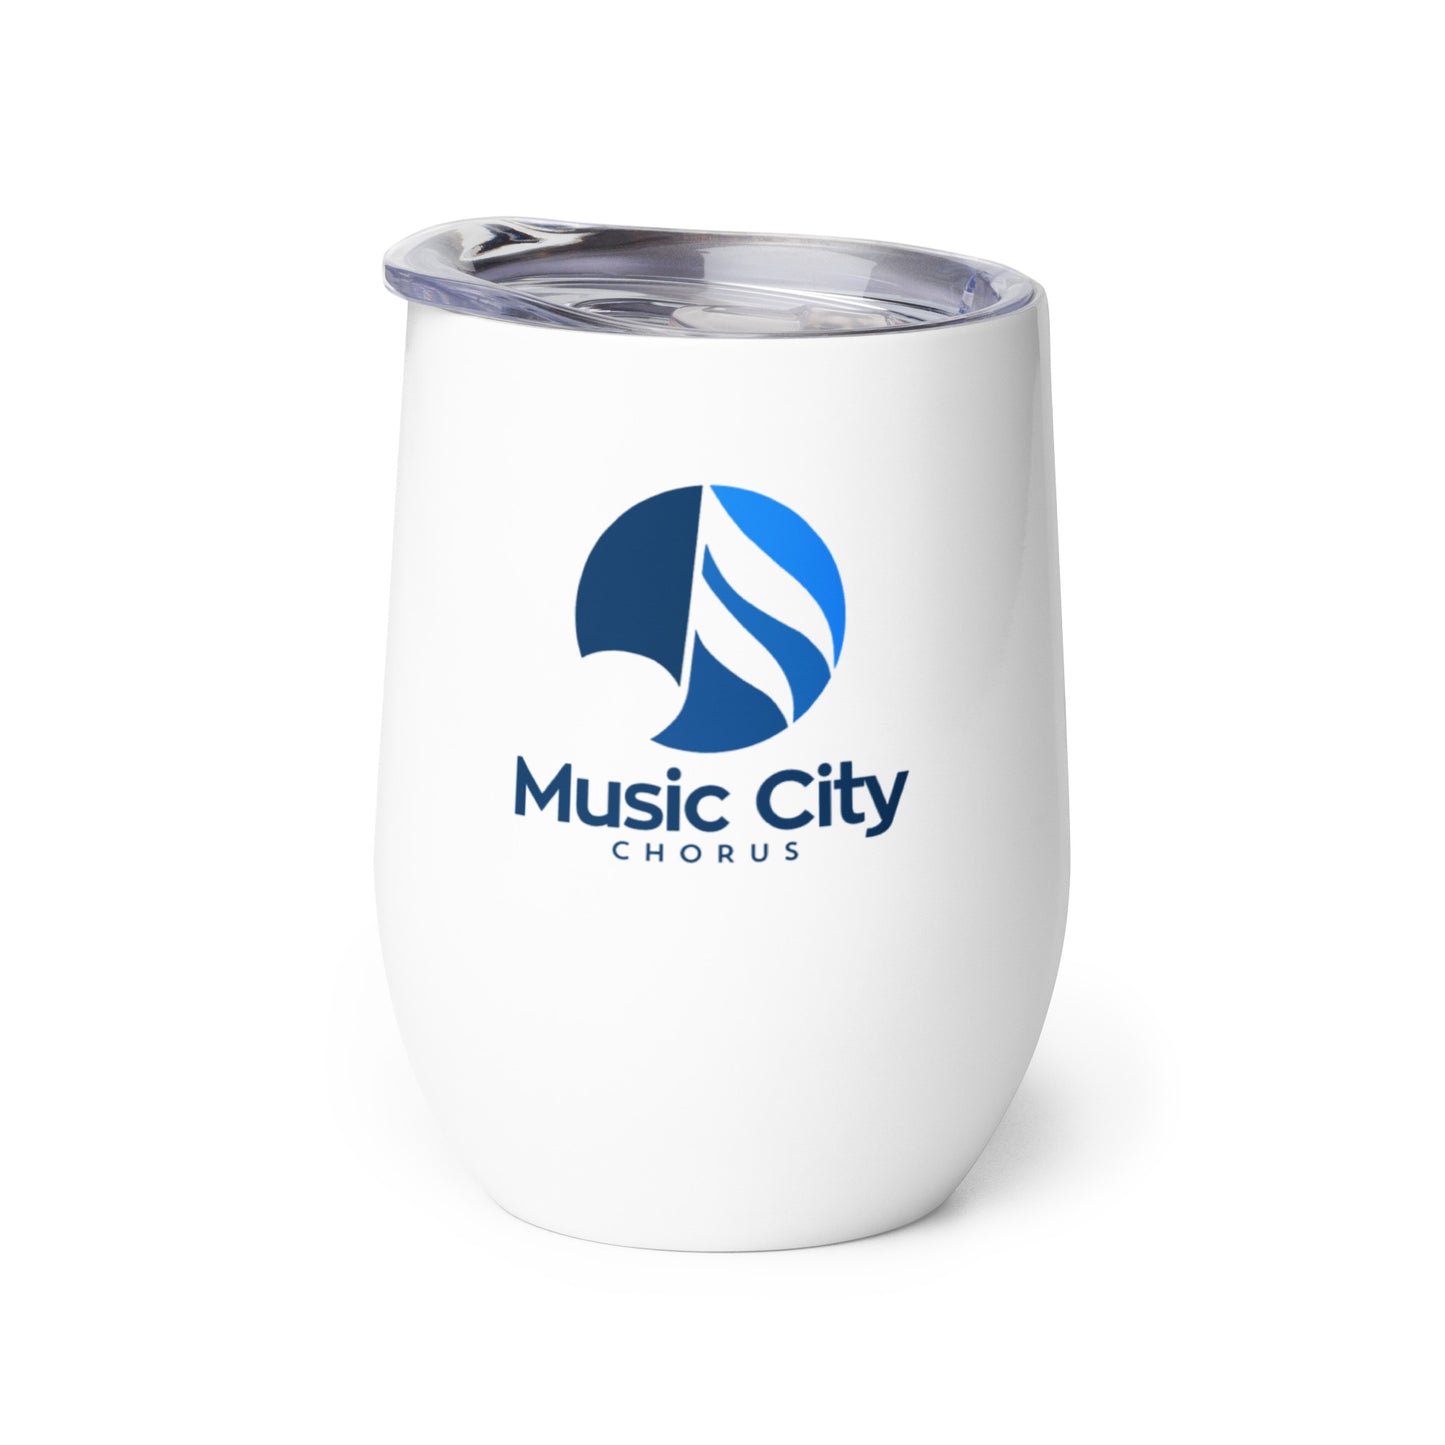 Music City Chorus - Wine tumbler